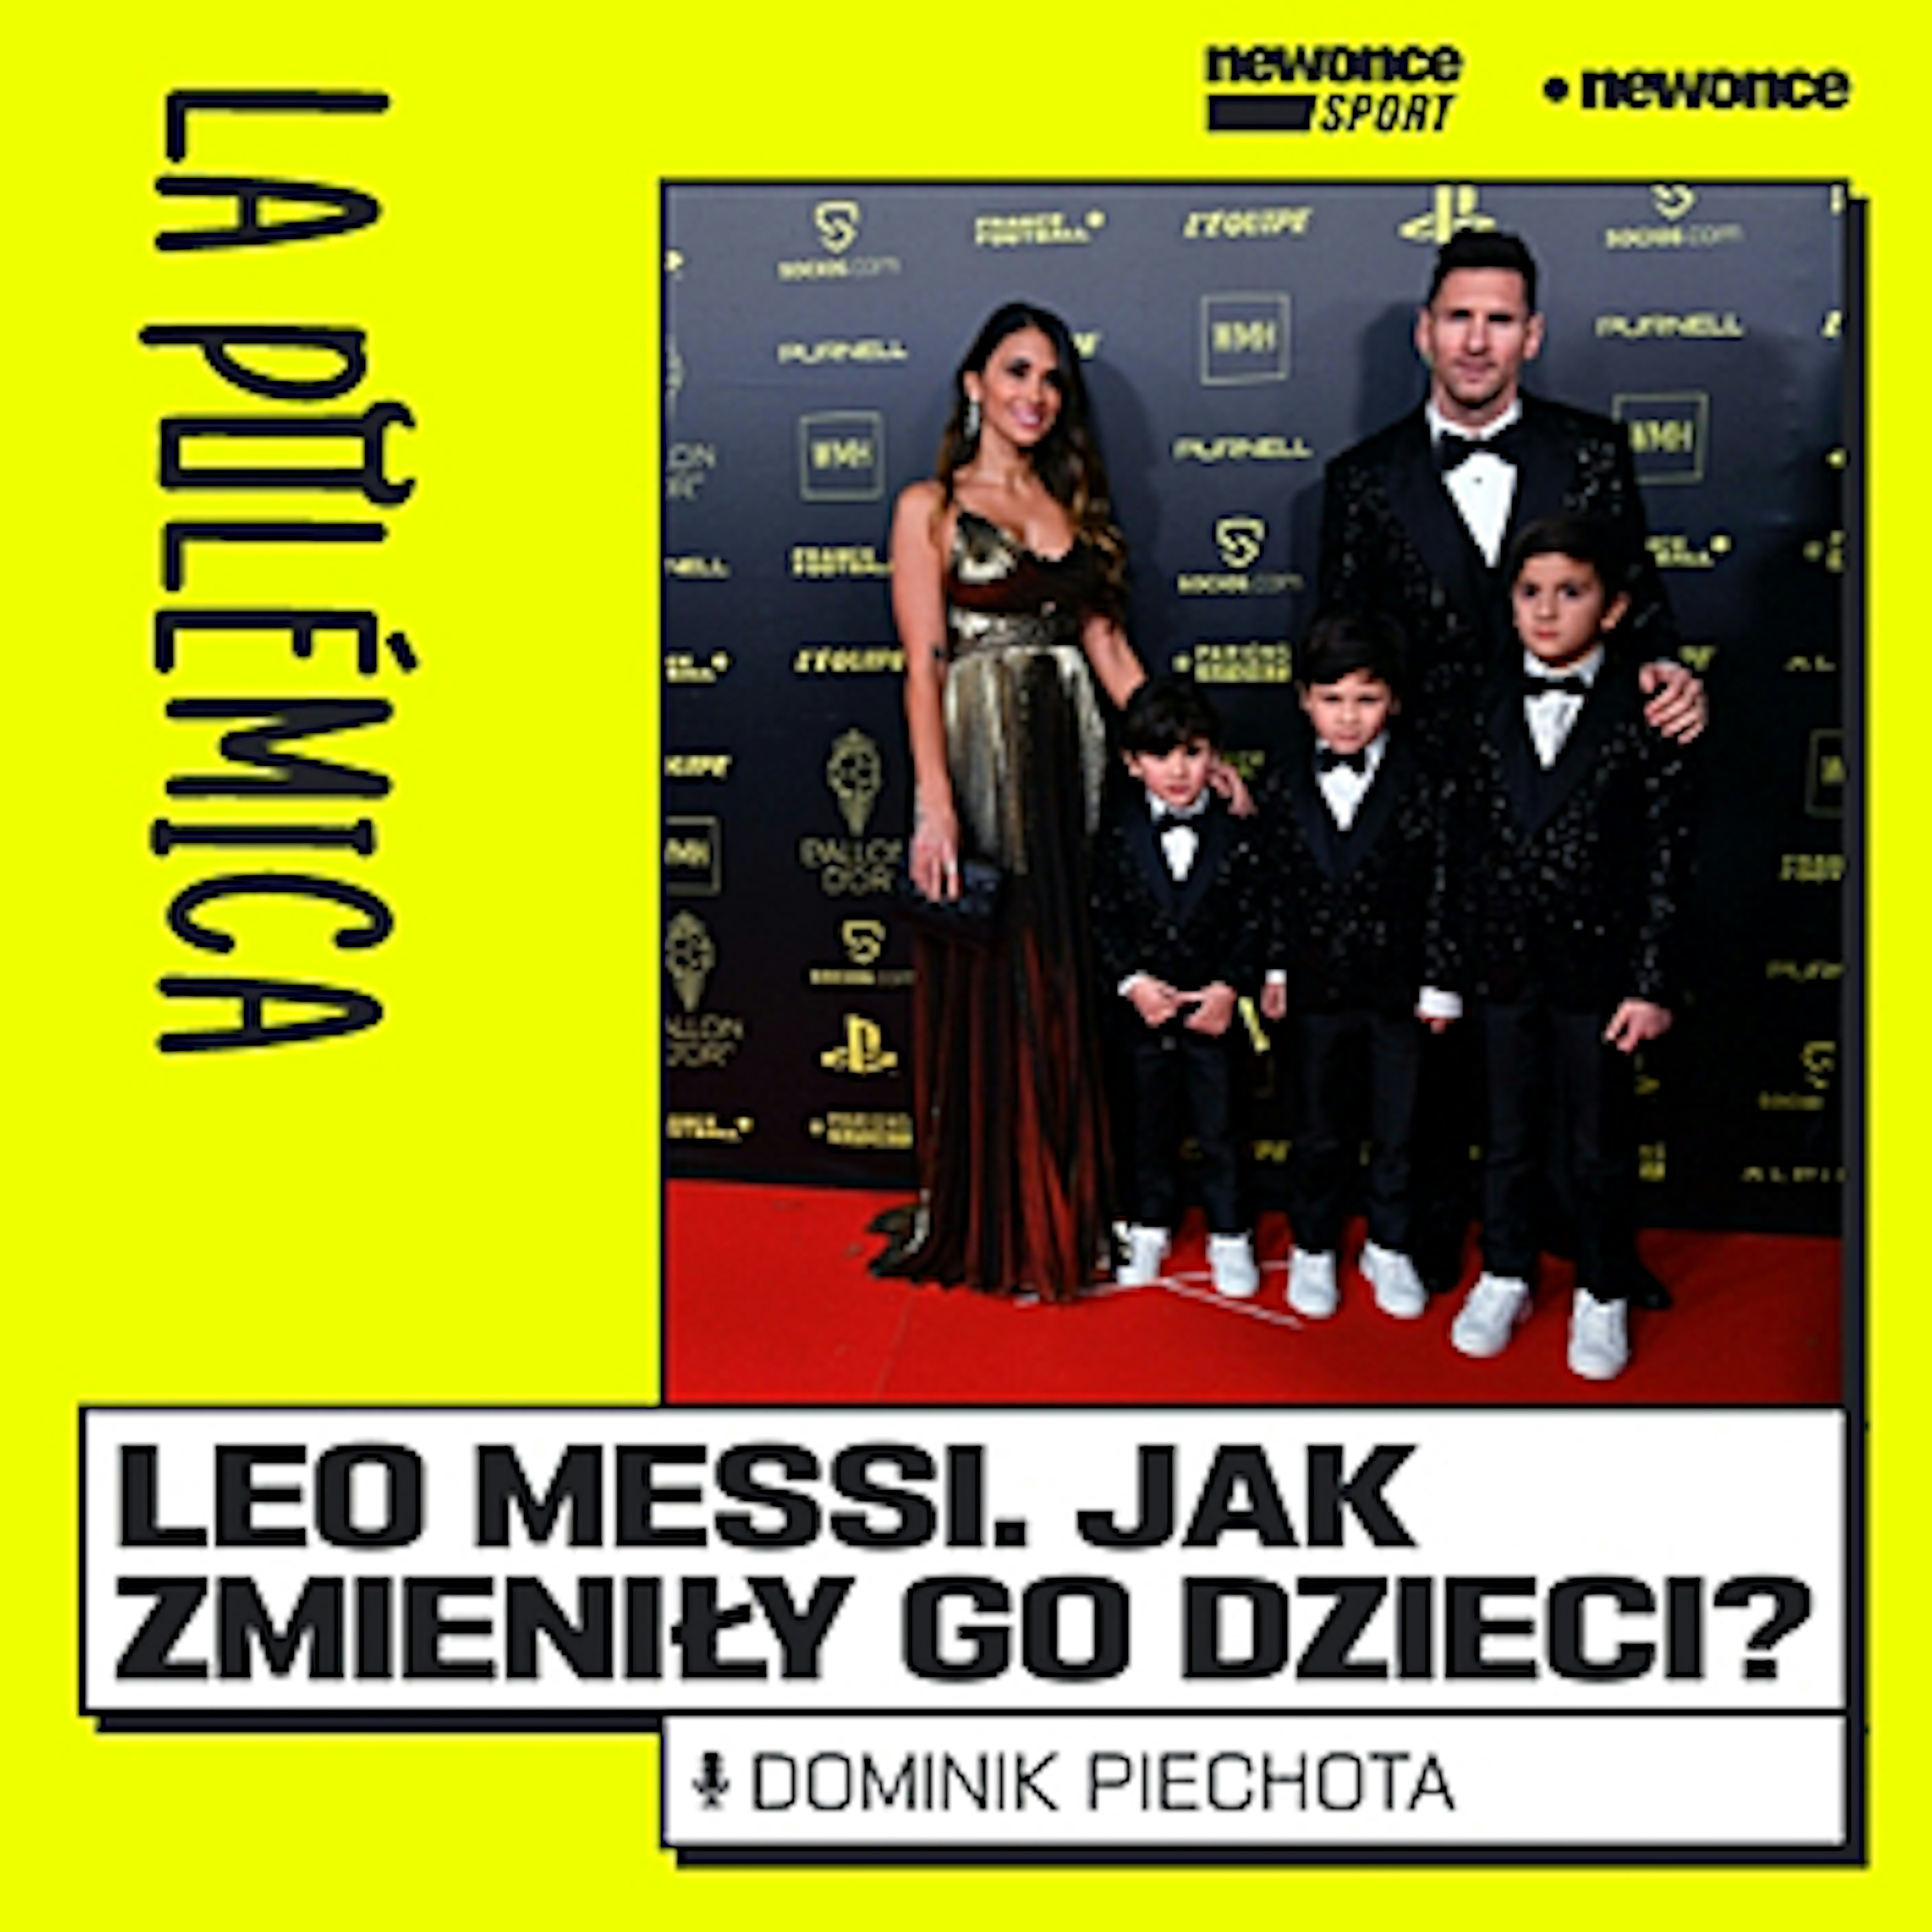 La Polemica - Leo Messi jest boomerem. Jak zmieniły go dzieci?